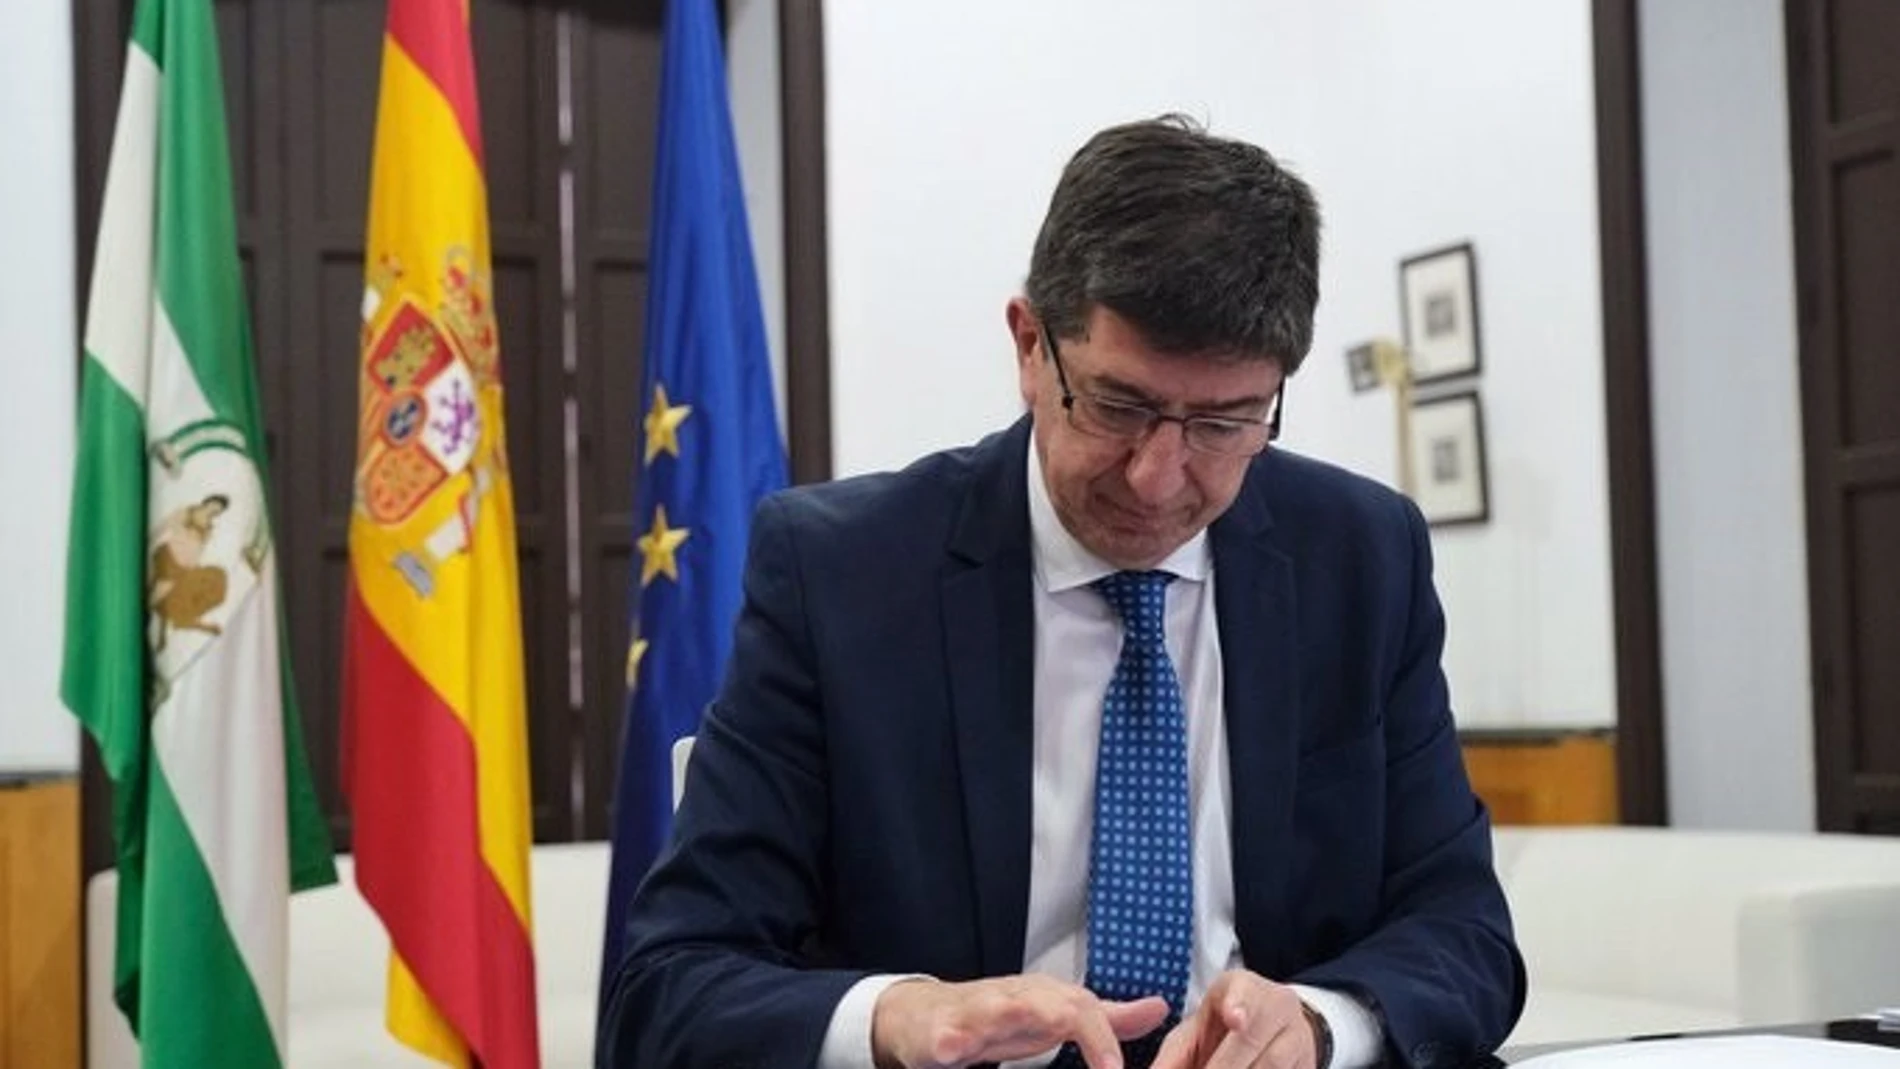 El vicepresidente de la Junta de Andalucía y consejero de Turismo, Juan MarínJUNTA DE ANDALUCÍA15/05/2020